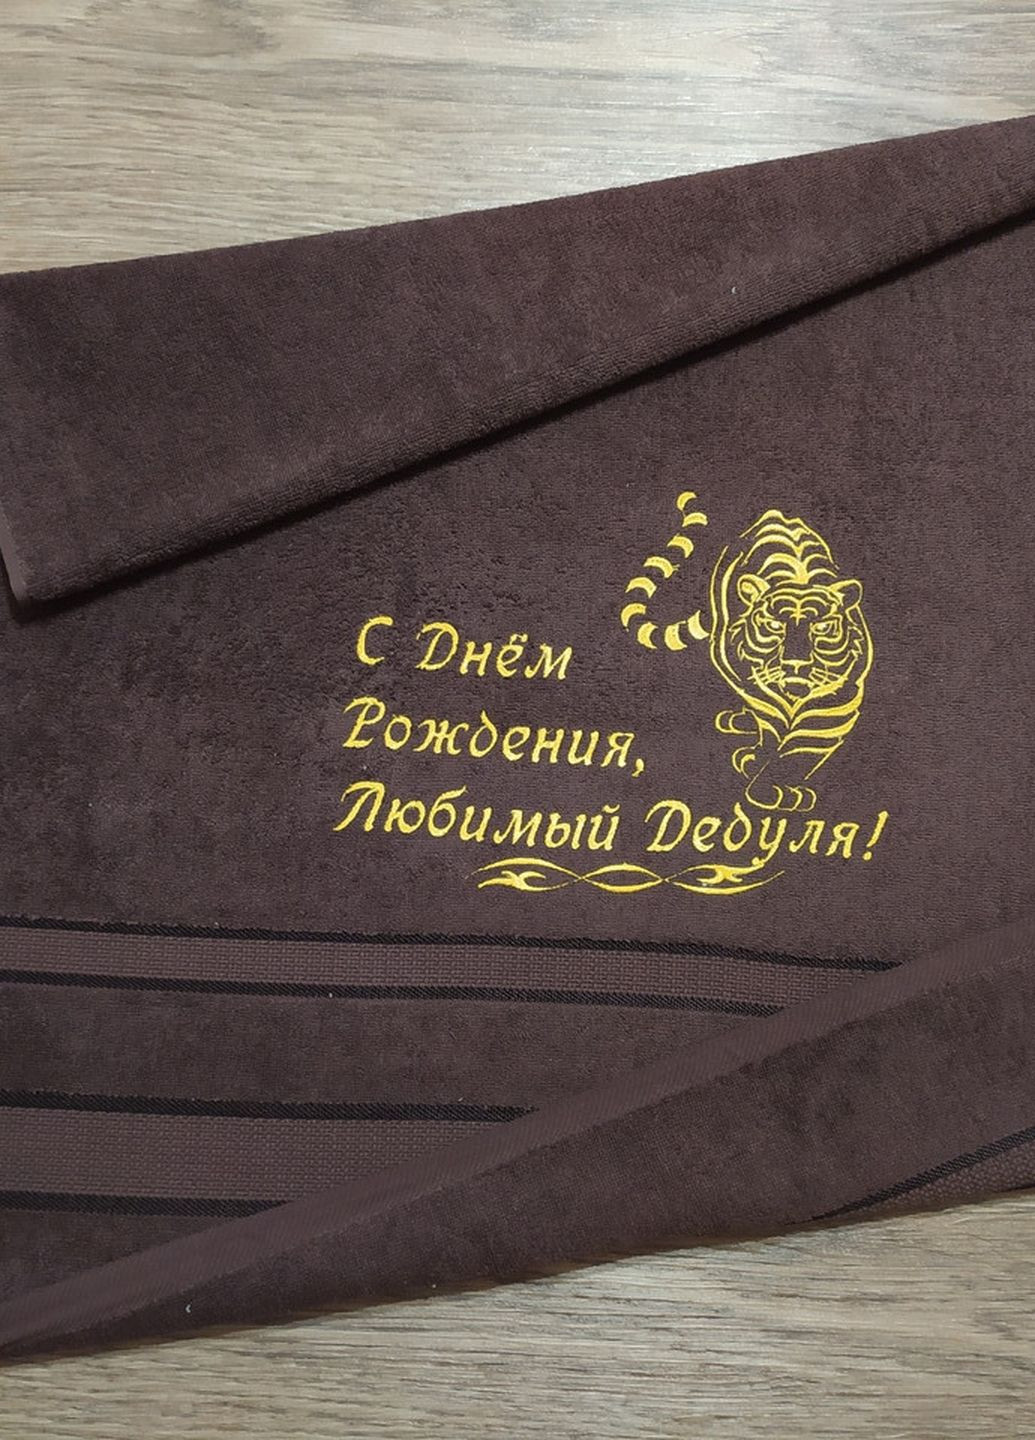 No Brand полотенце с вышивкой махровое банное 70*140 темно-коричневый дедушке 4848 однотонный темно-коричневый производство - Украина